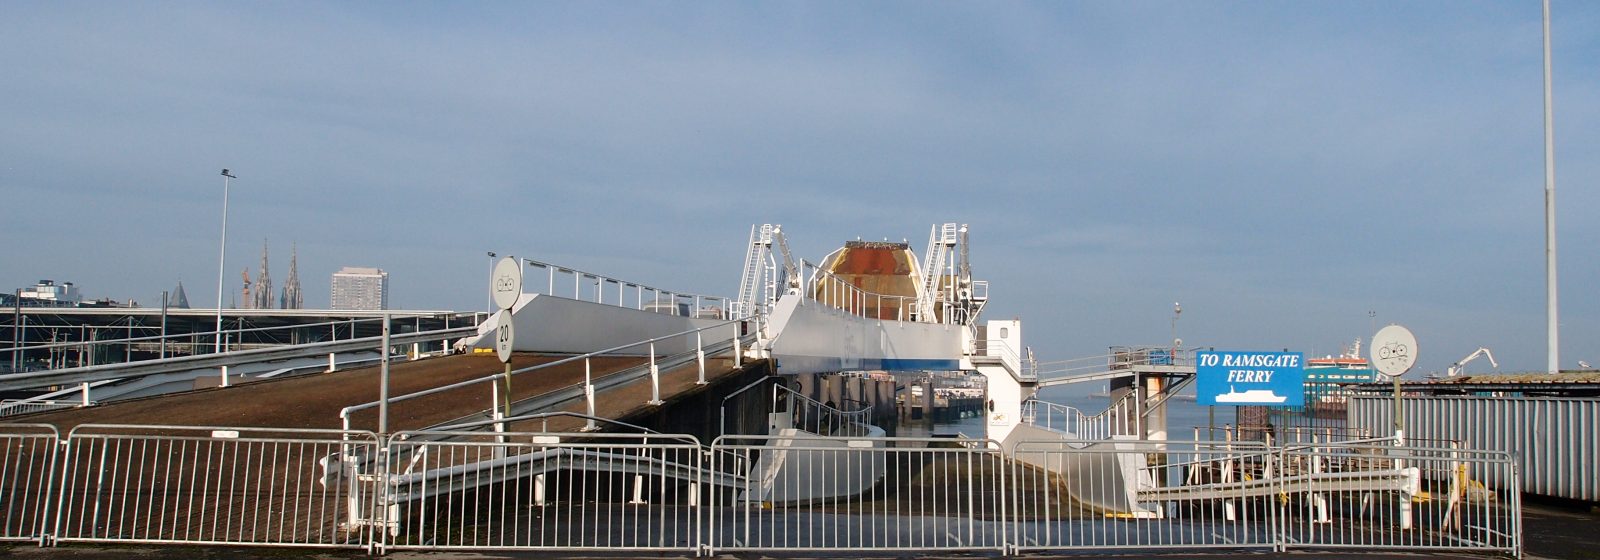 Laadbrug voor ferry's in Haven Oostende